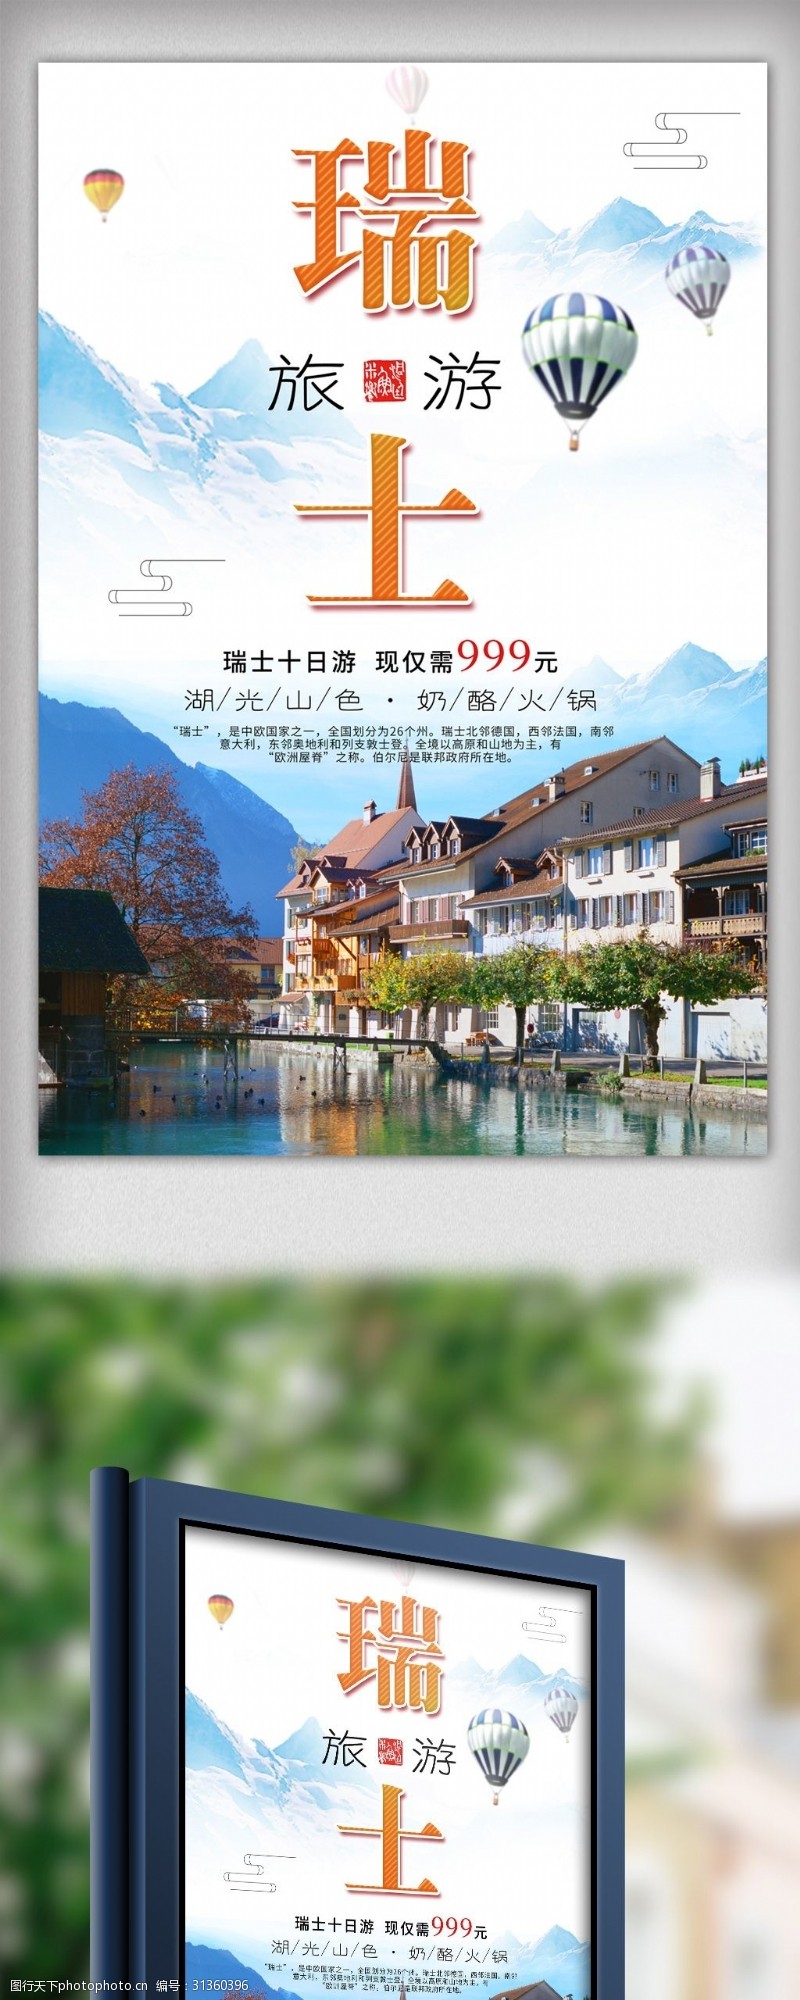 瑞士旅游景点中国风瑞士旅游宣传海报